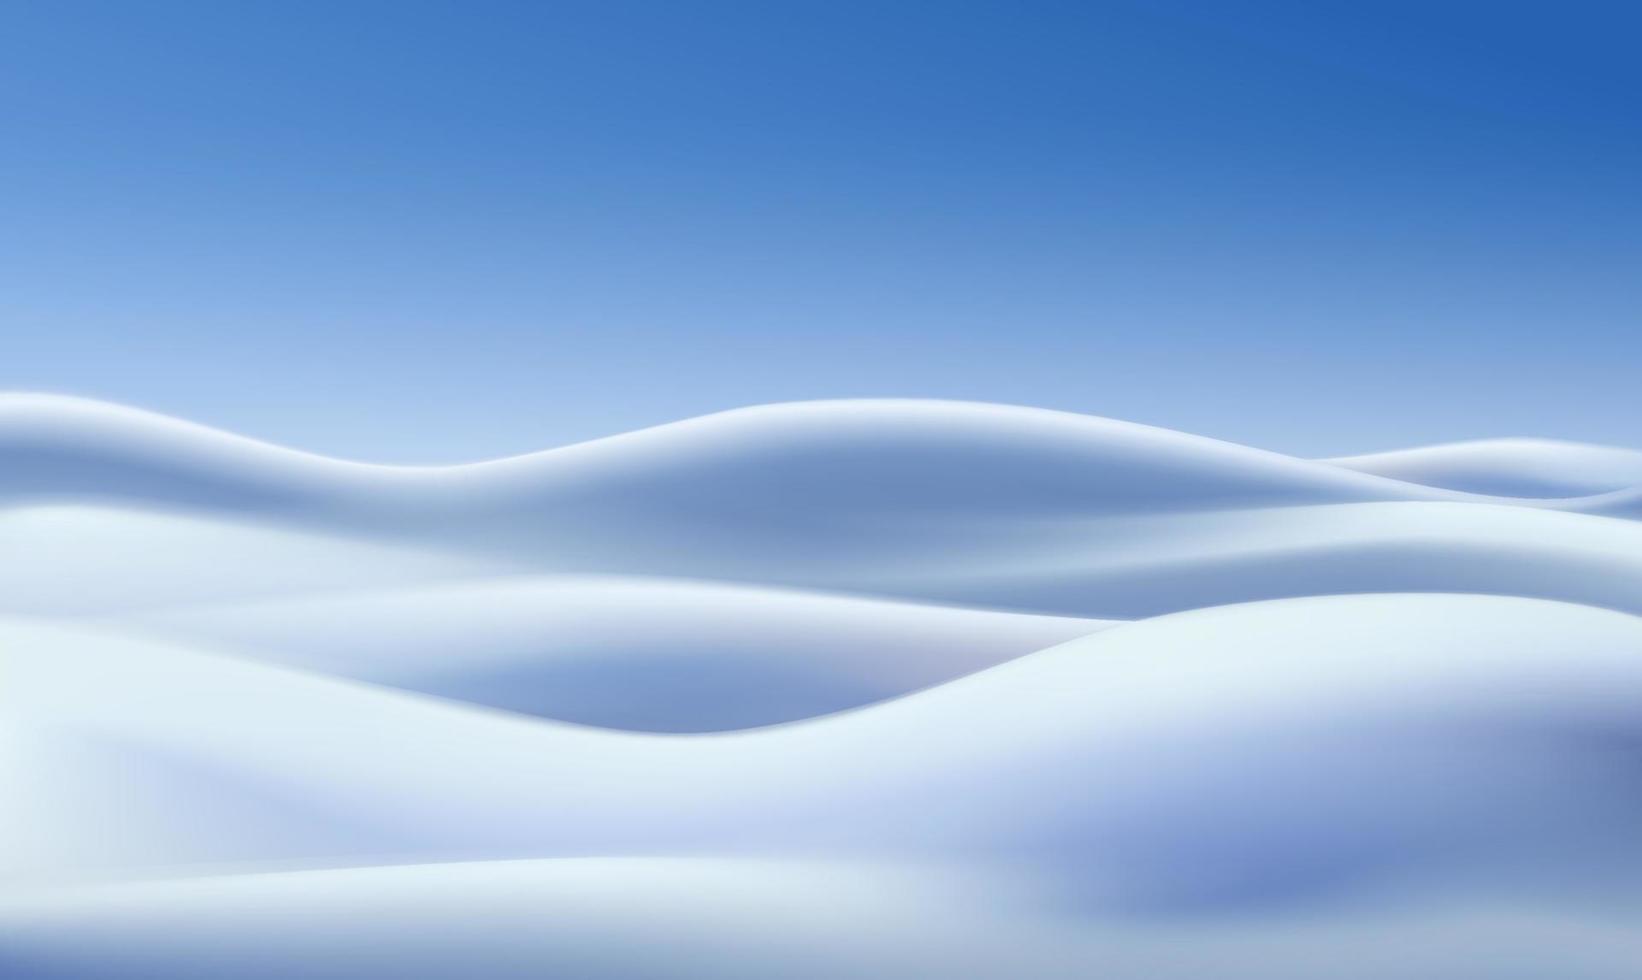 fond d'hiver réaliste de vecteur avec champs de neige et ciel bleu.